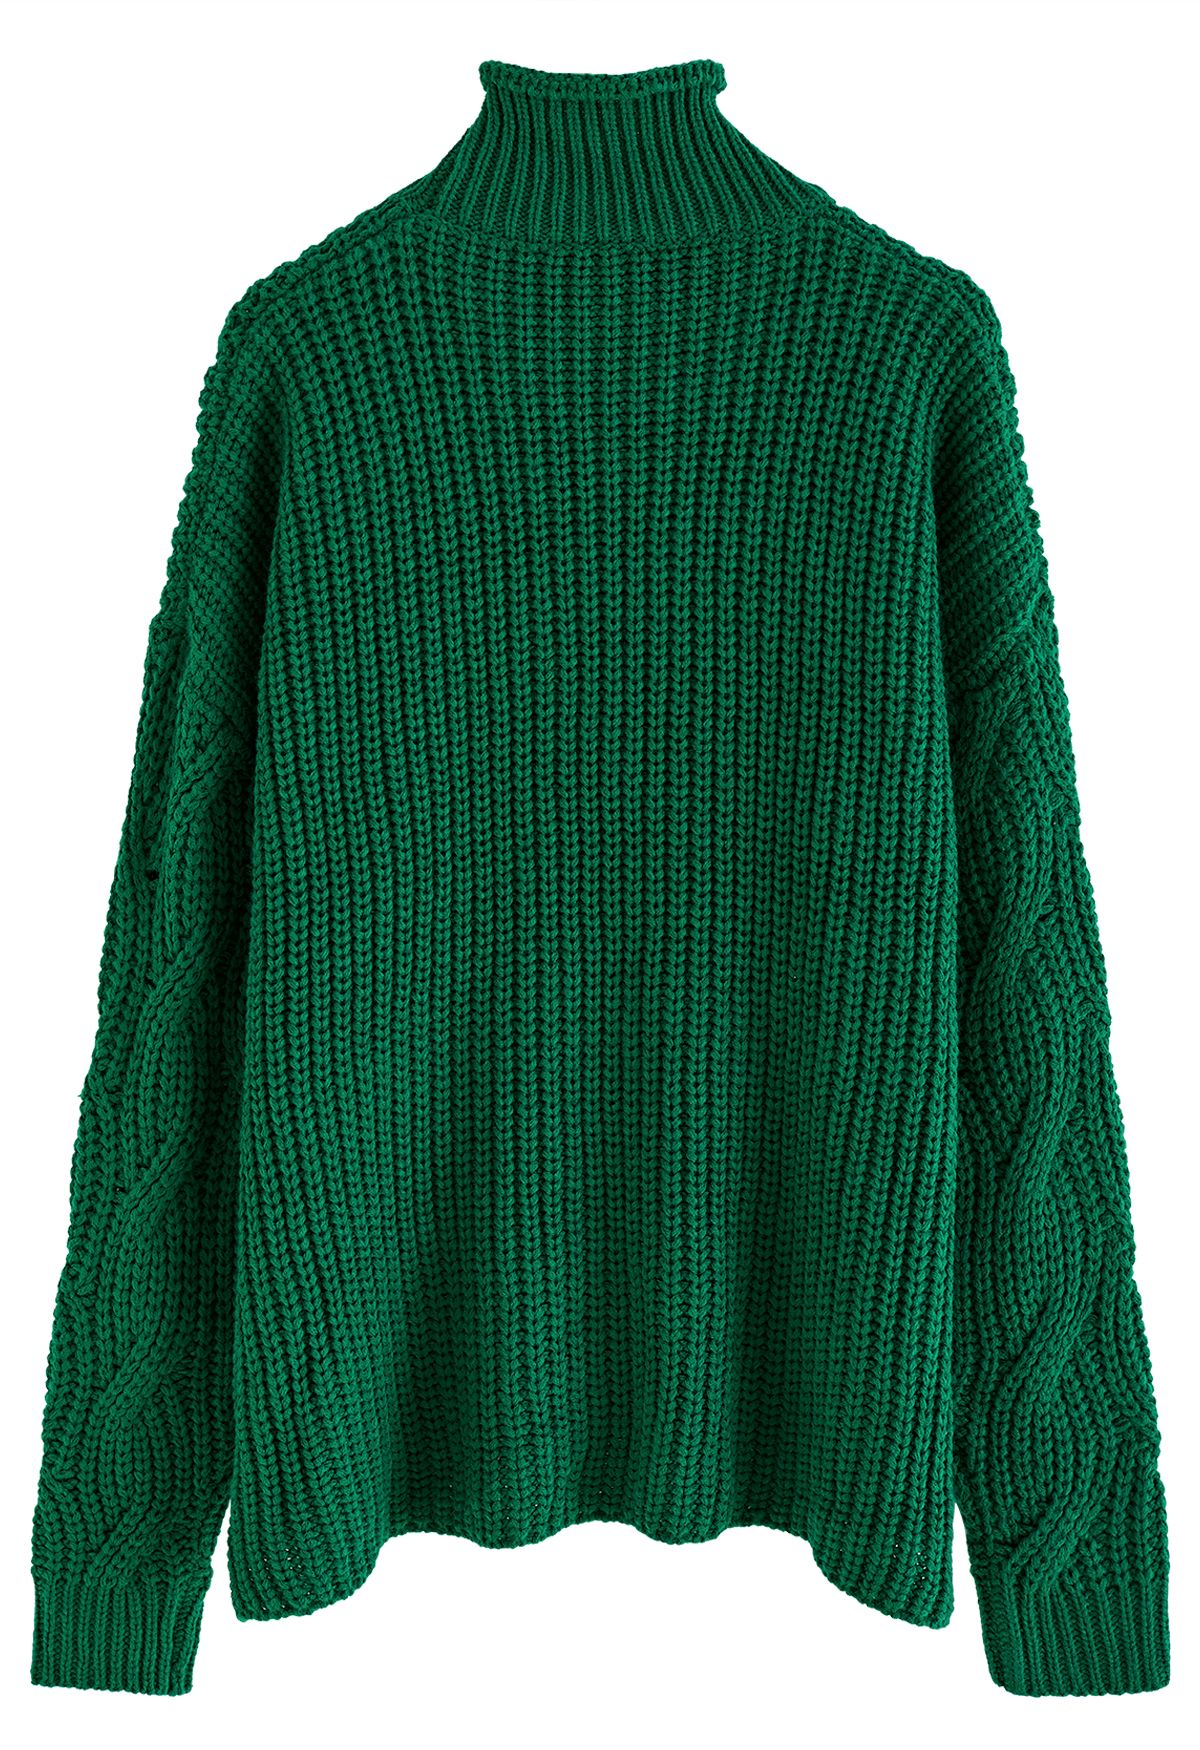 Suéter de punto grueso trenzado Hi-Lo de cuello alto en esmeralda